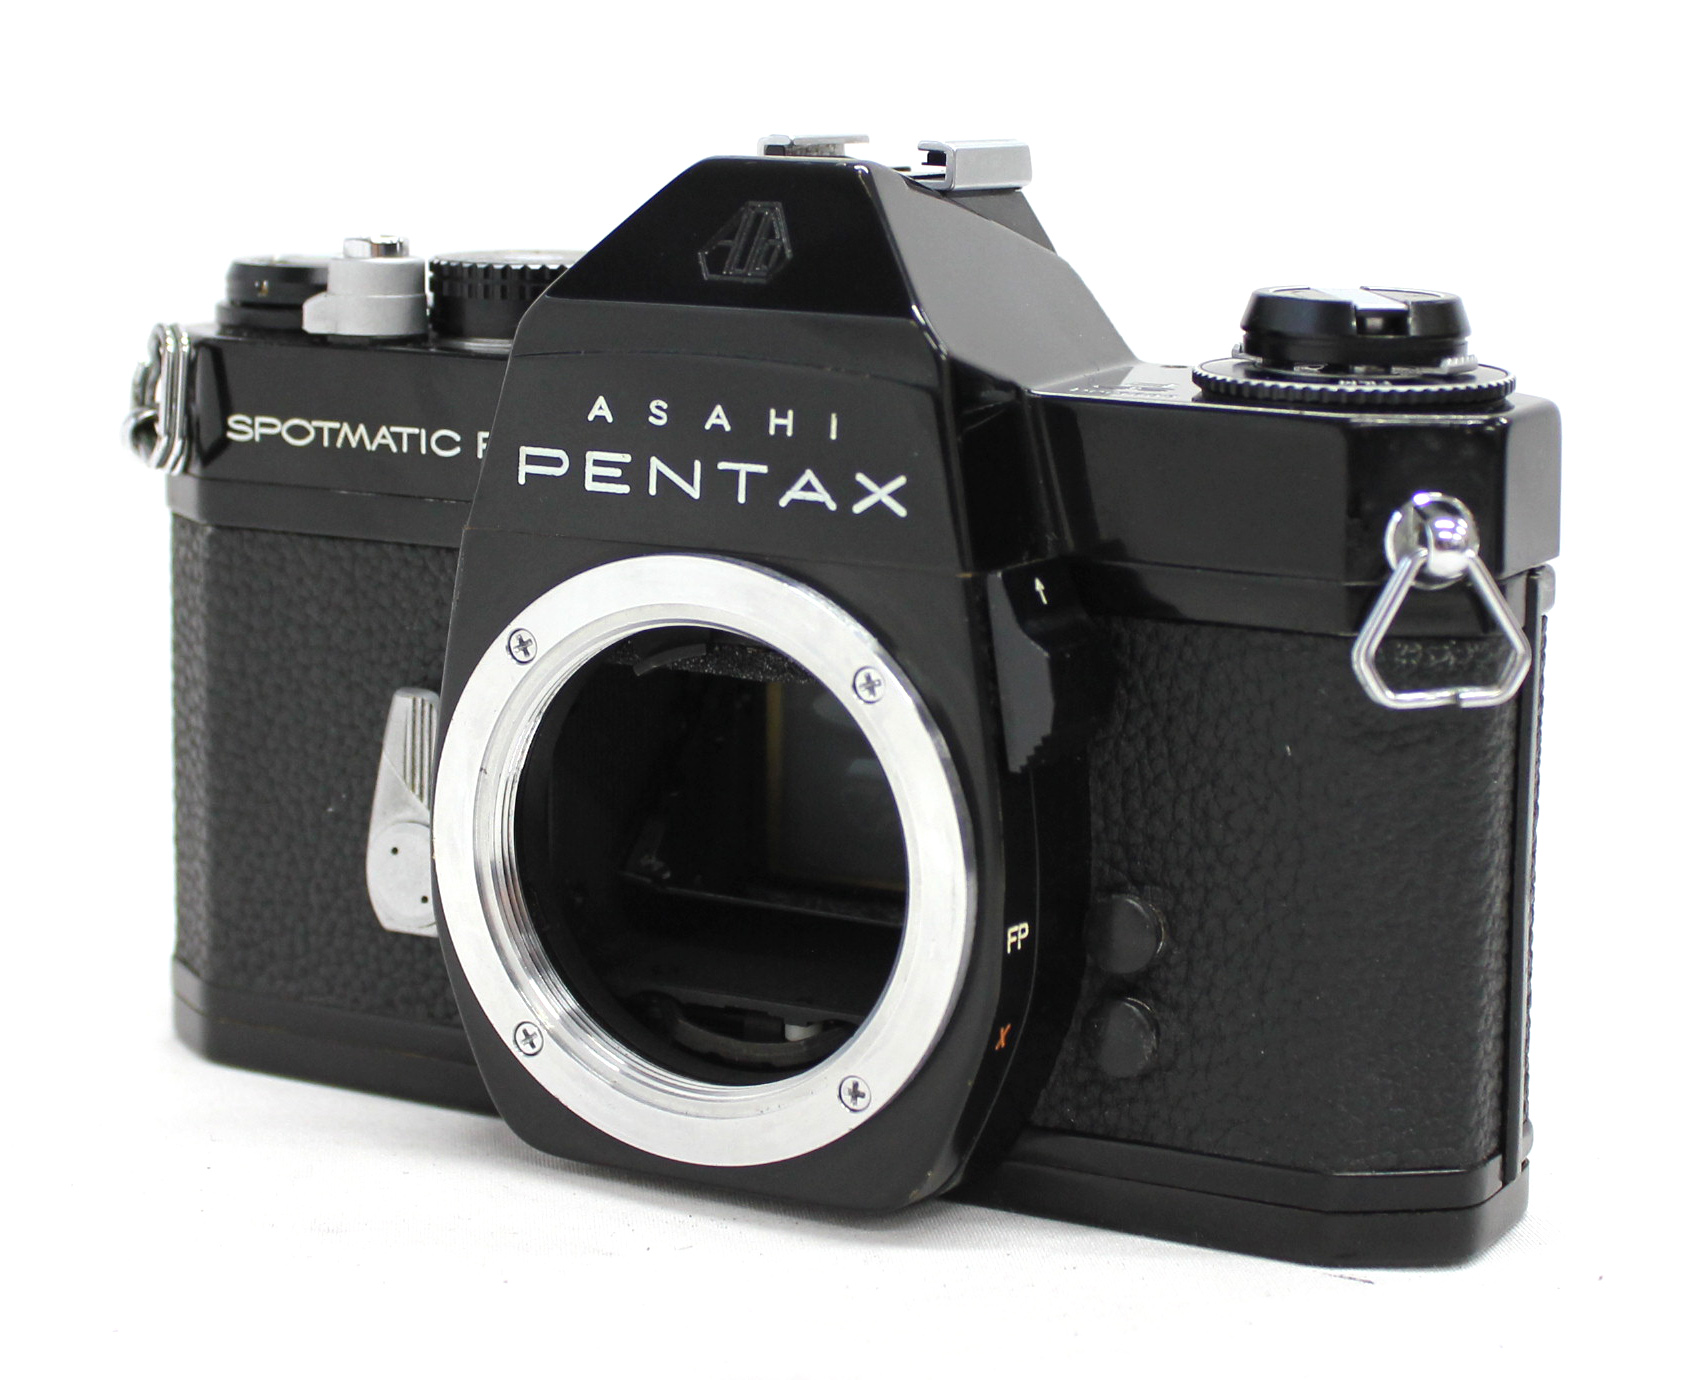 Asahi Pentax Spotmatic F SPF Black SLR Camera w/ SMC Takumar 55mm